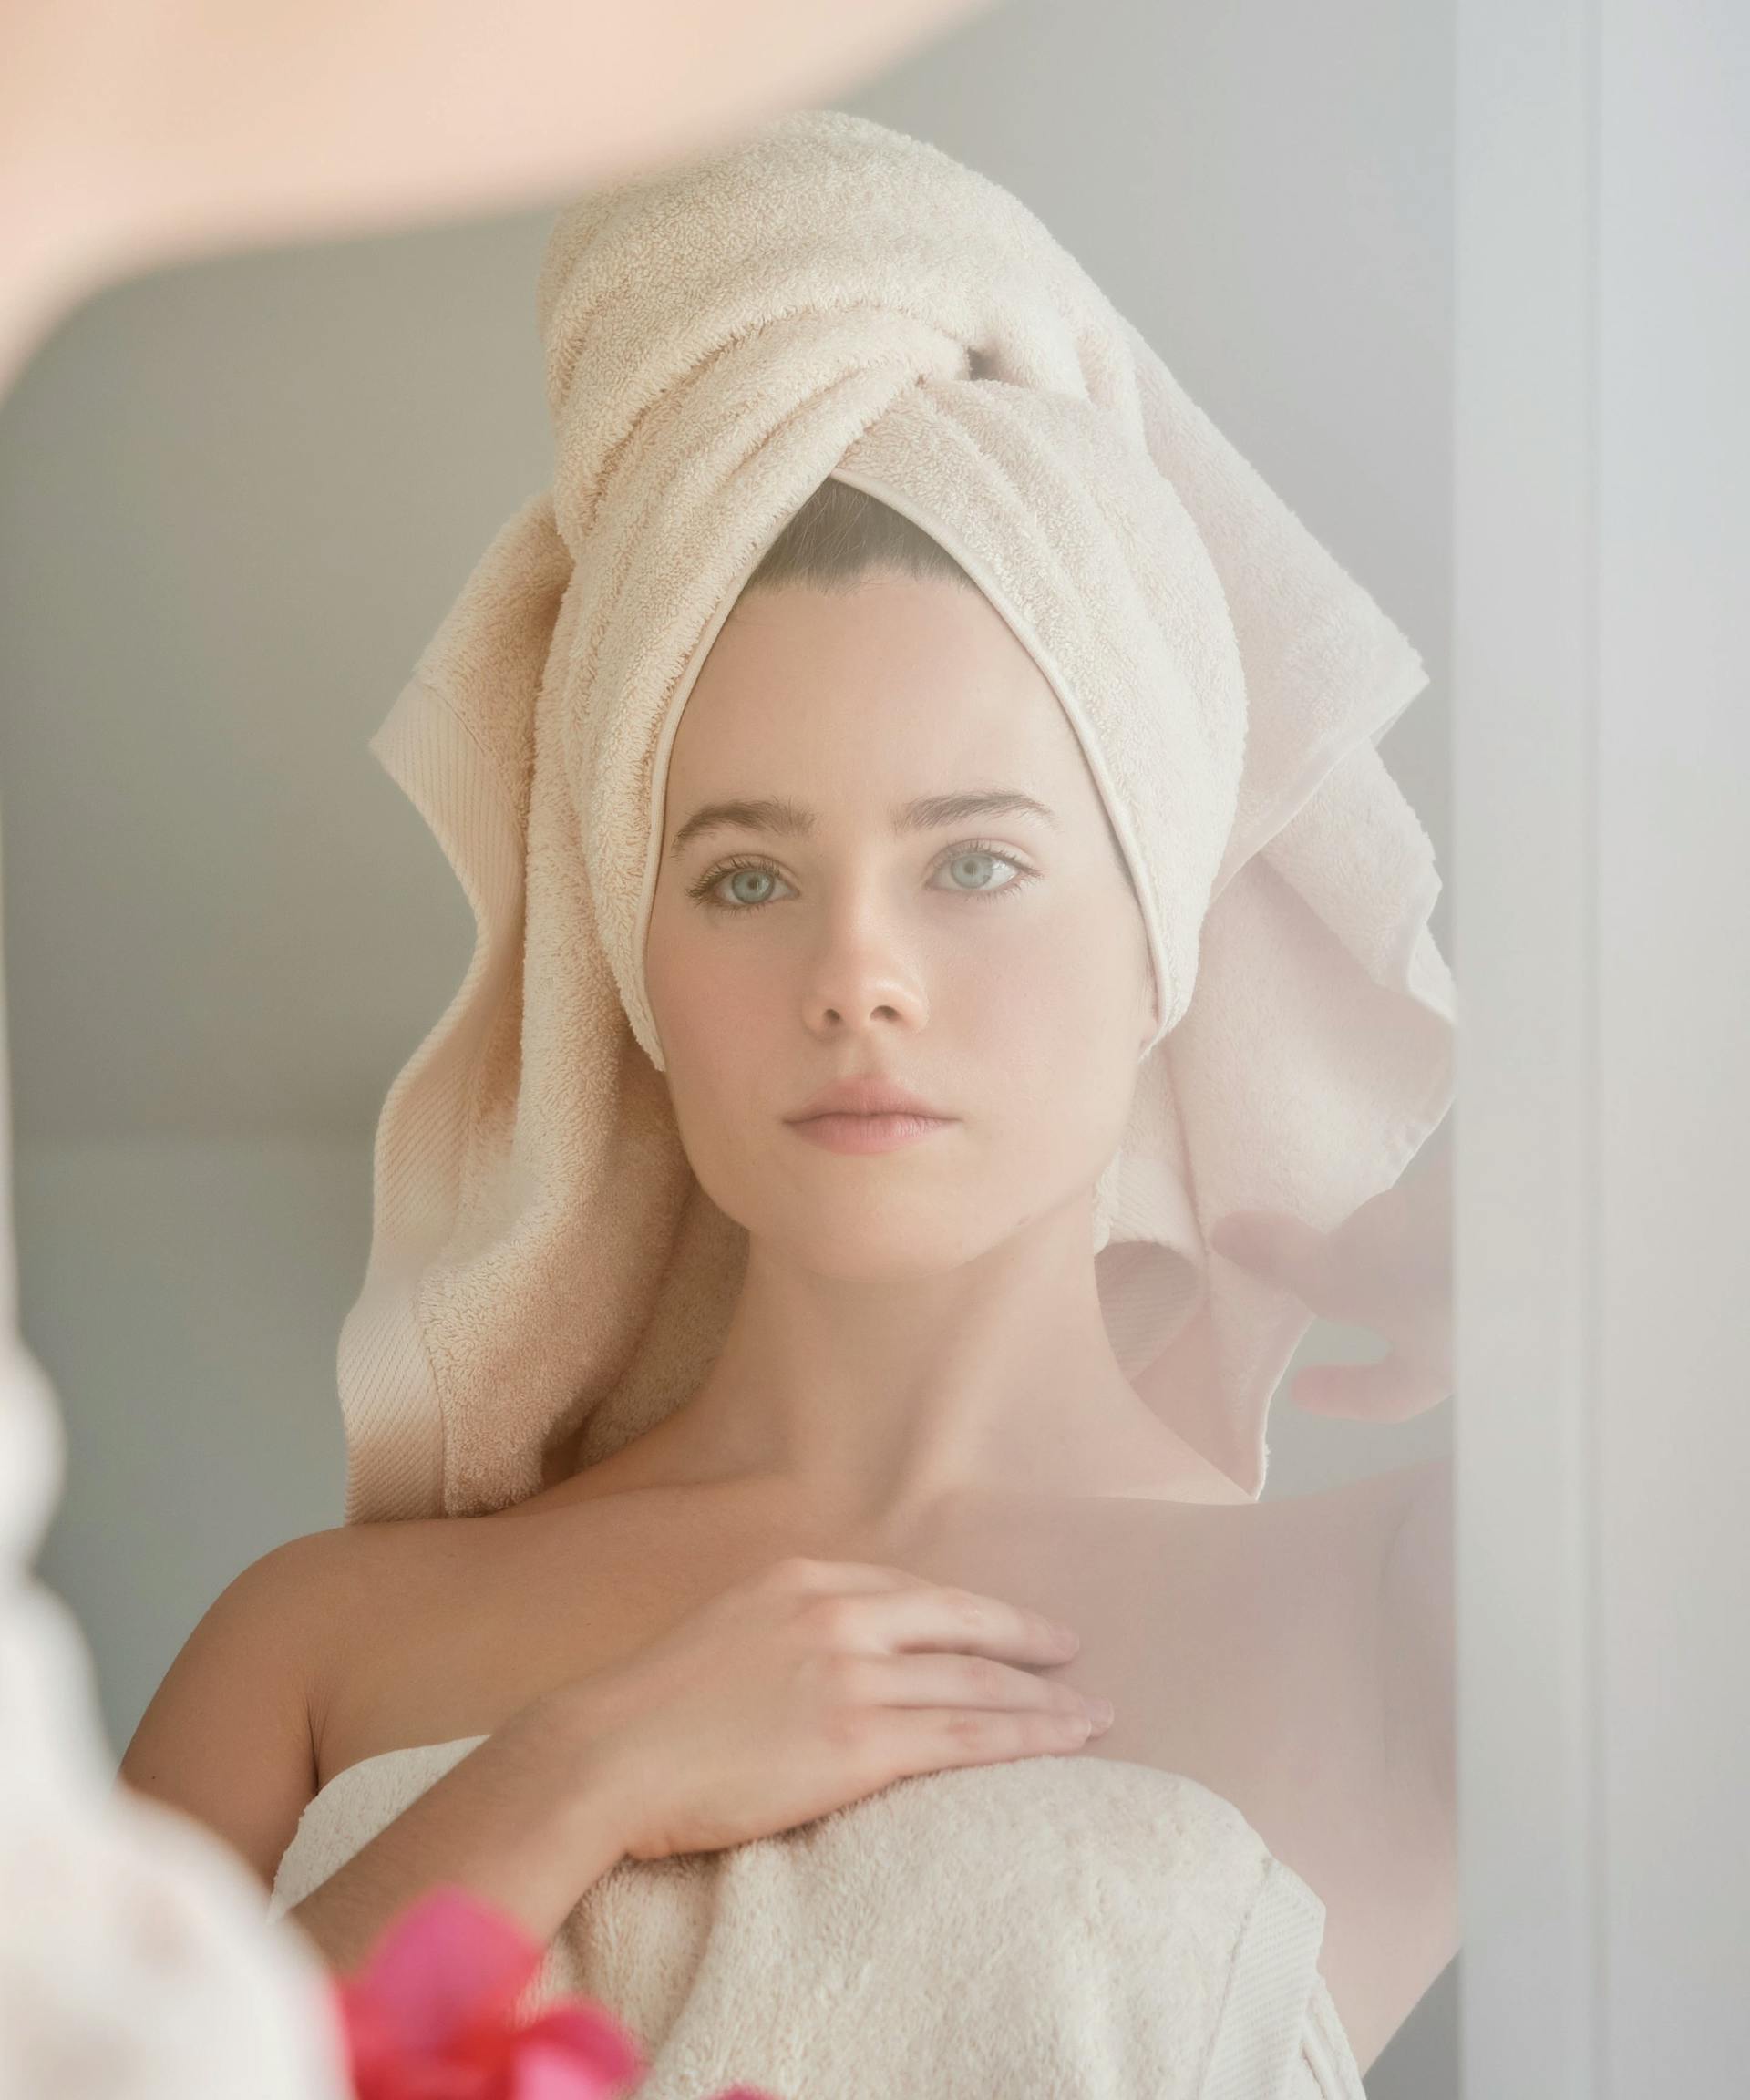 Woman looking in mirror > Shutterstock